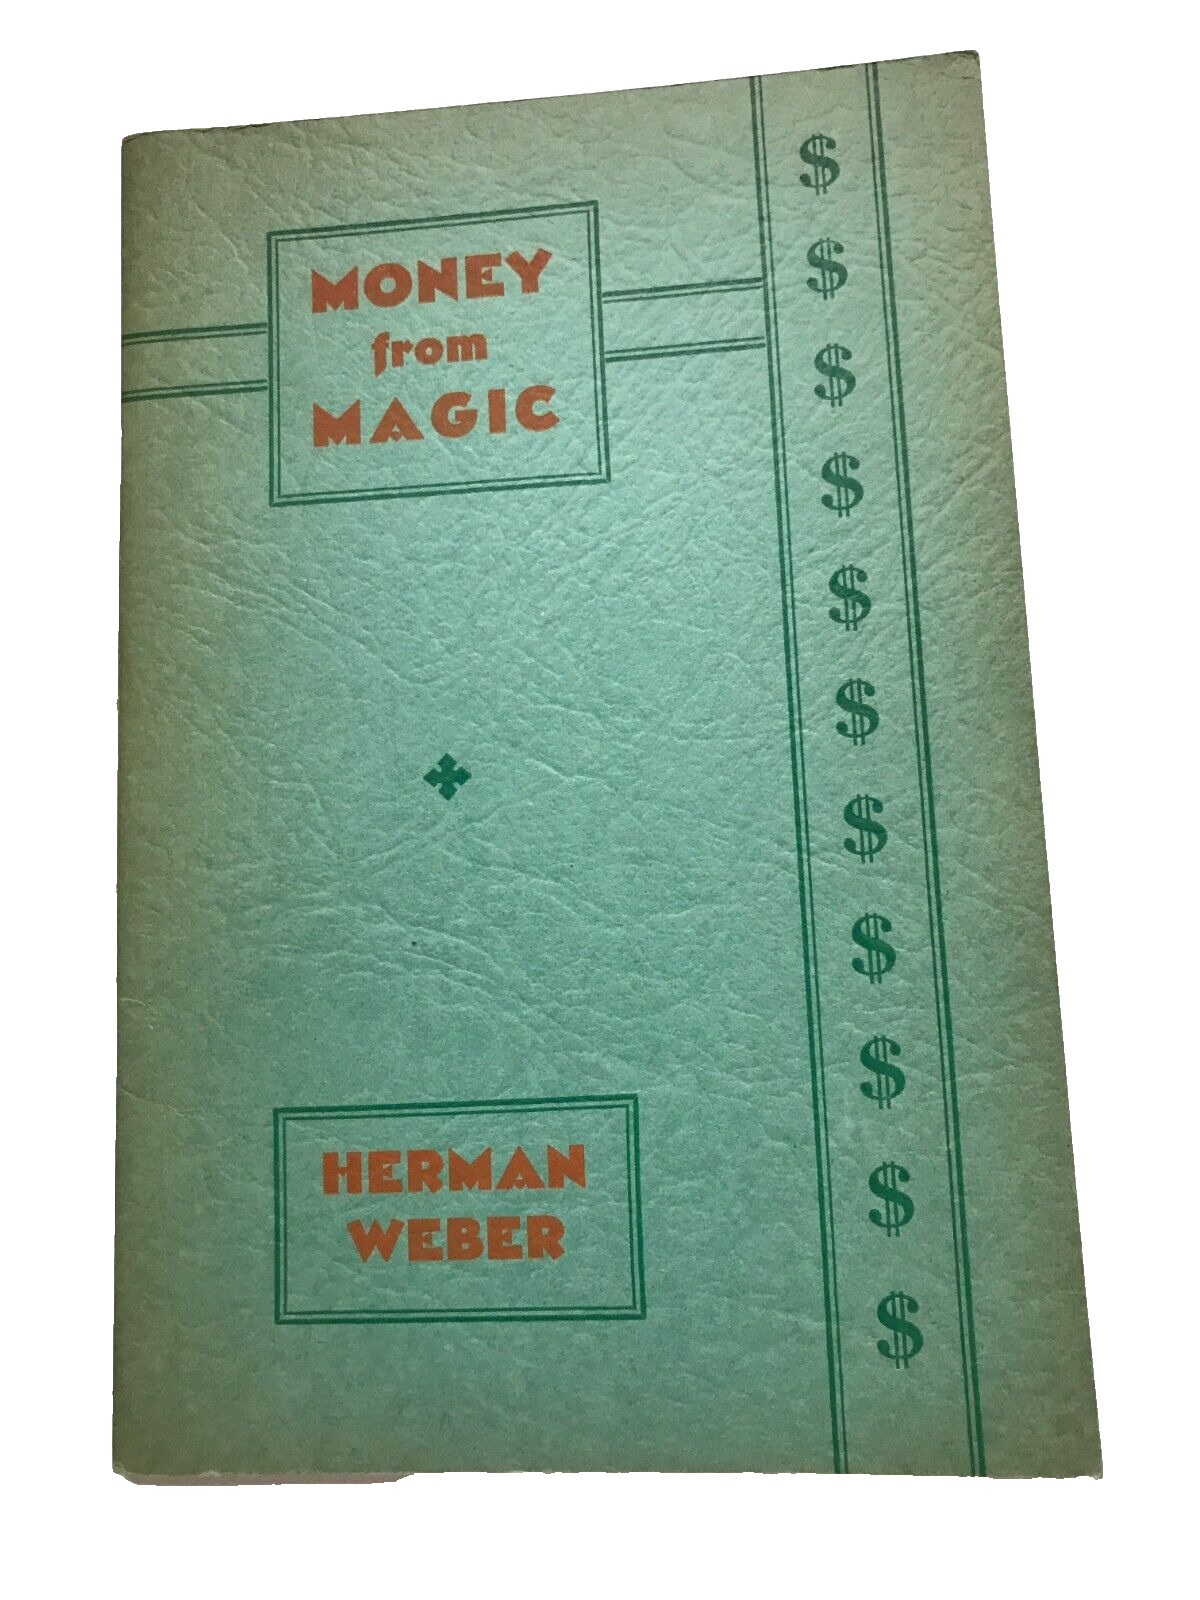 1936 ANTIQUE MONEY FROM MAGIC  MAGIC TRICKS BOOK